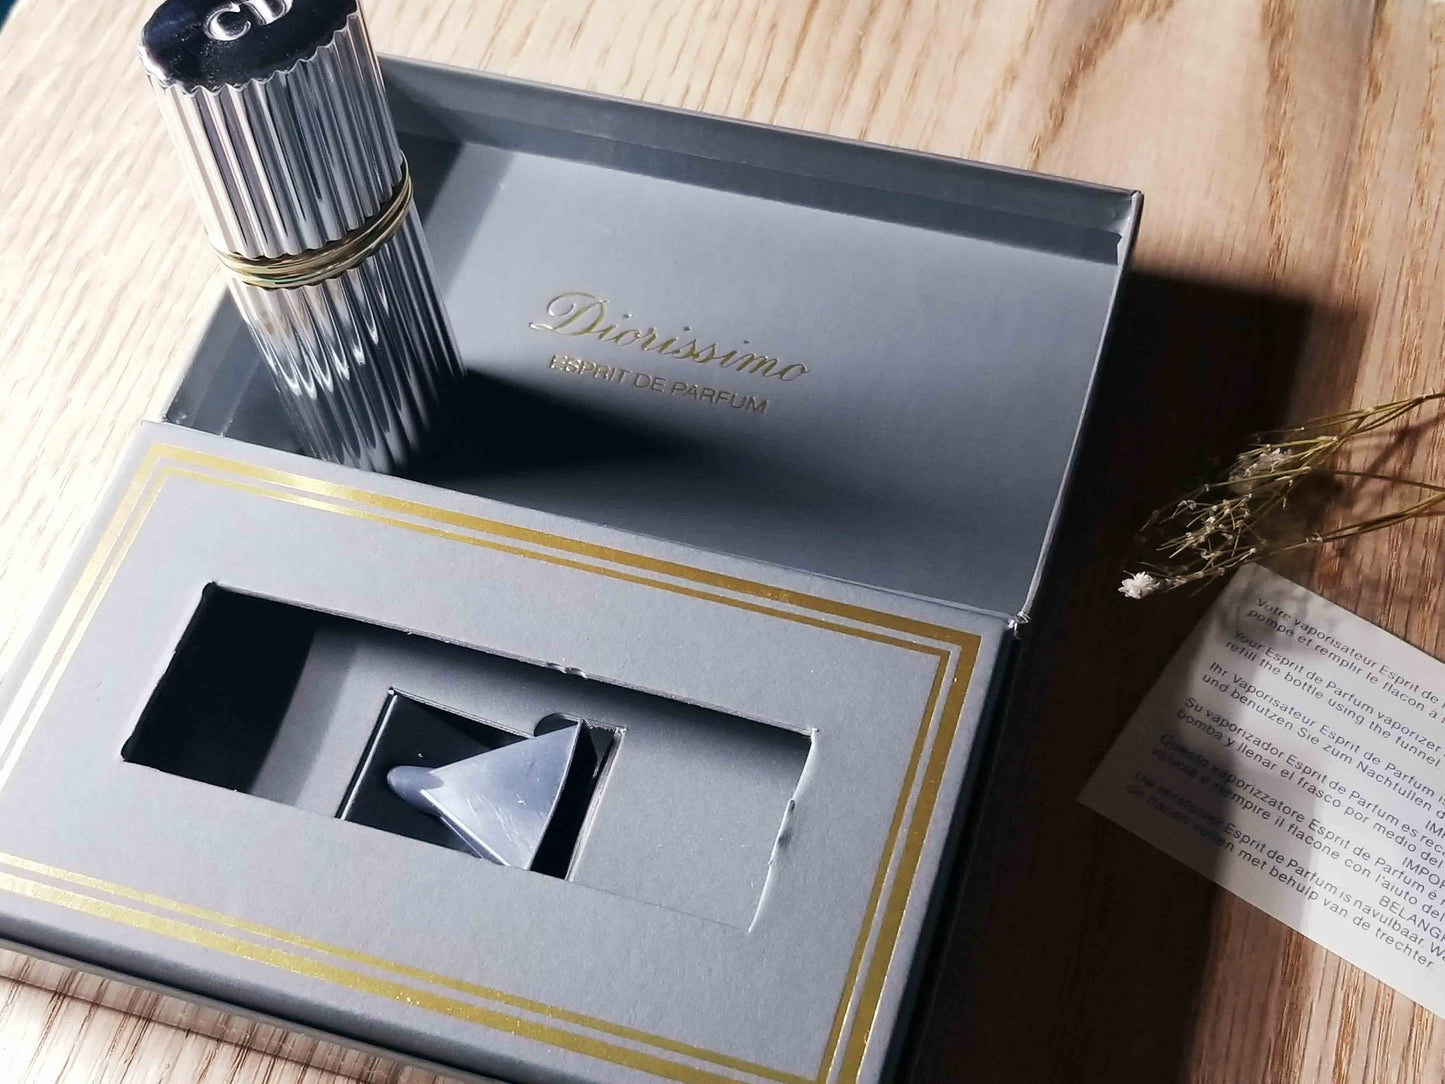 Diorissimo Christian Dior for women Pure Parfum Spray 10 ml 0.3 oz, Vintage, Rare